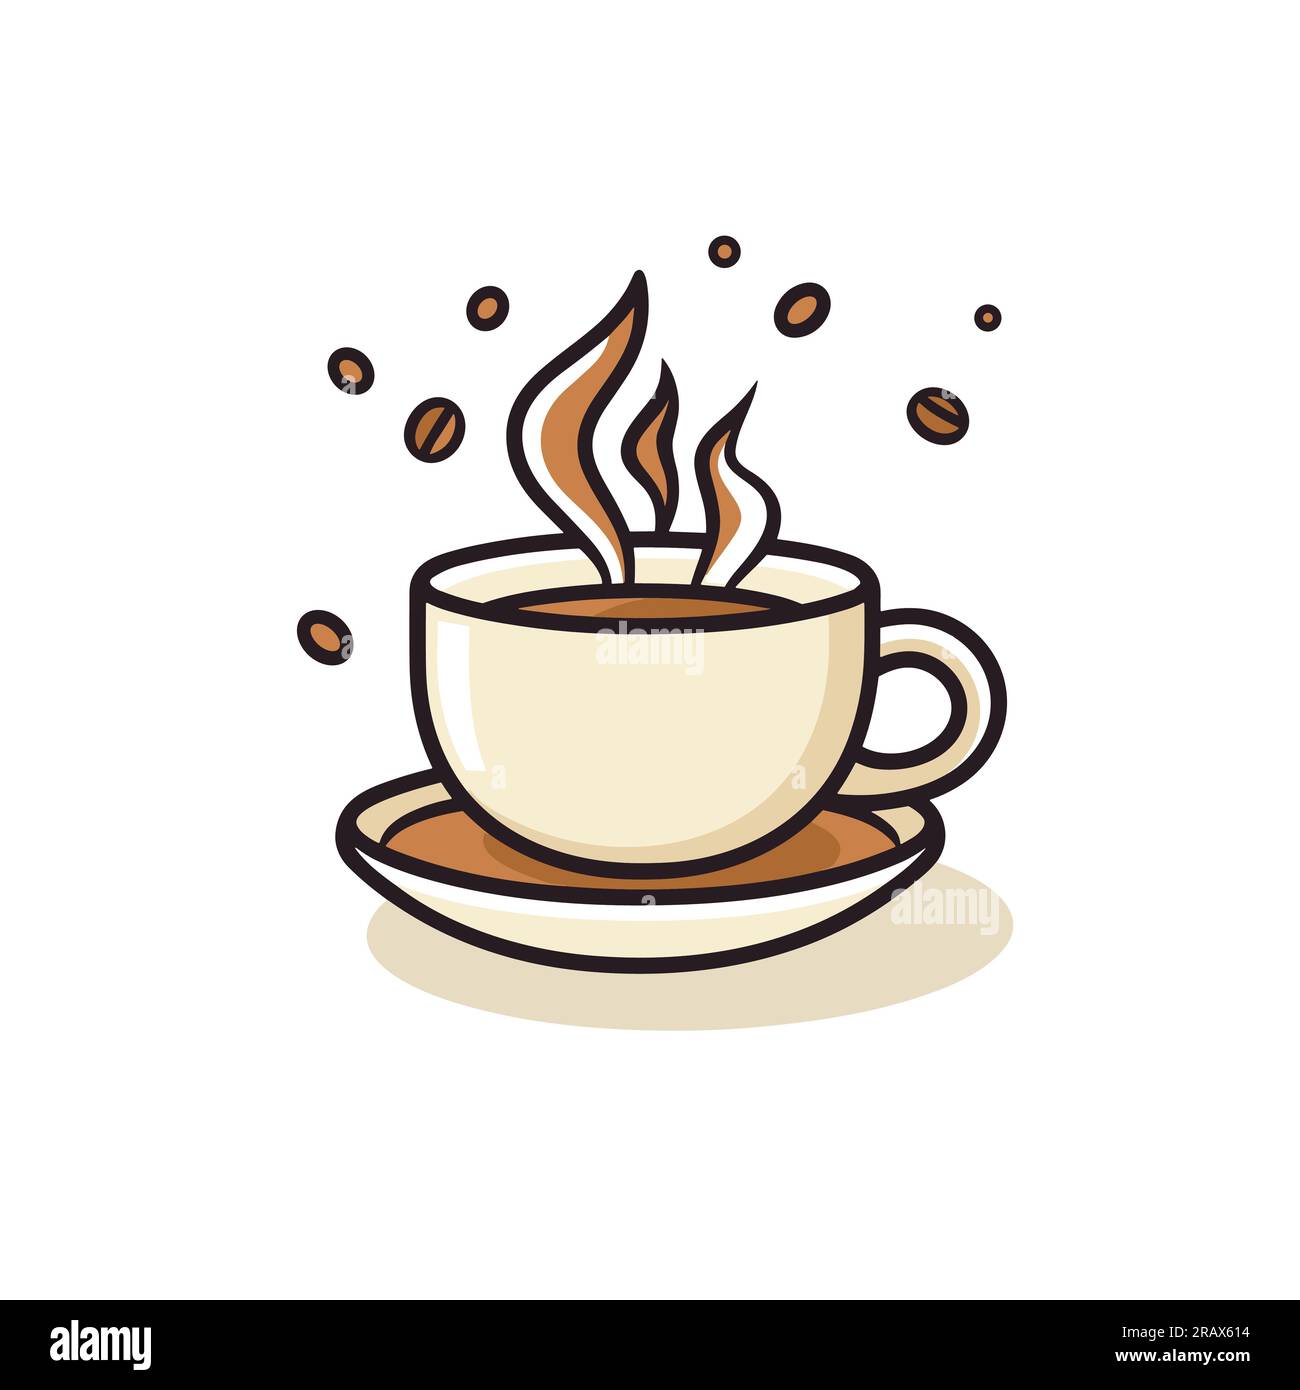 Conception de logo de vecteur de tasse de café, logo de café Premium. Icône  de tasse de café, icône d'illustration de café Image Vectorielle Stock -  Alamy